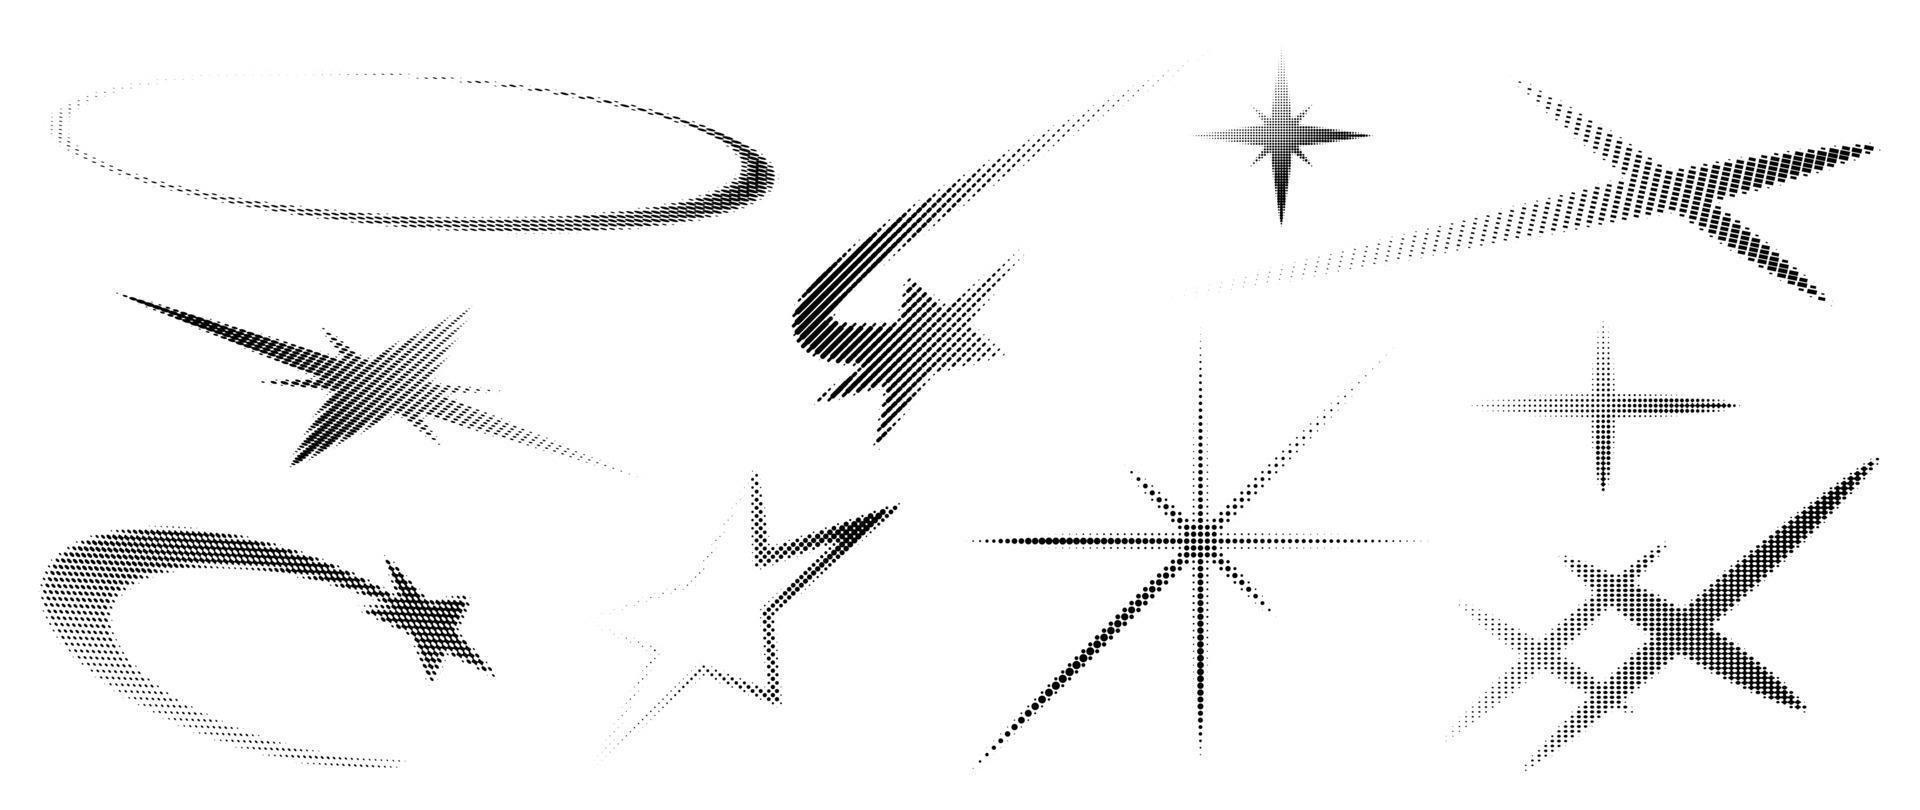 ilustración de vector de patrón de fondo de punto de semitono. textura punteada de degradado monocromático en forma de estrella y brillo, superposición desgastada desvanecida. diseño para póster, portada, pancarta, maqueta, pegatina, diseño.